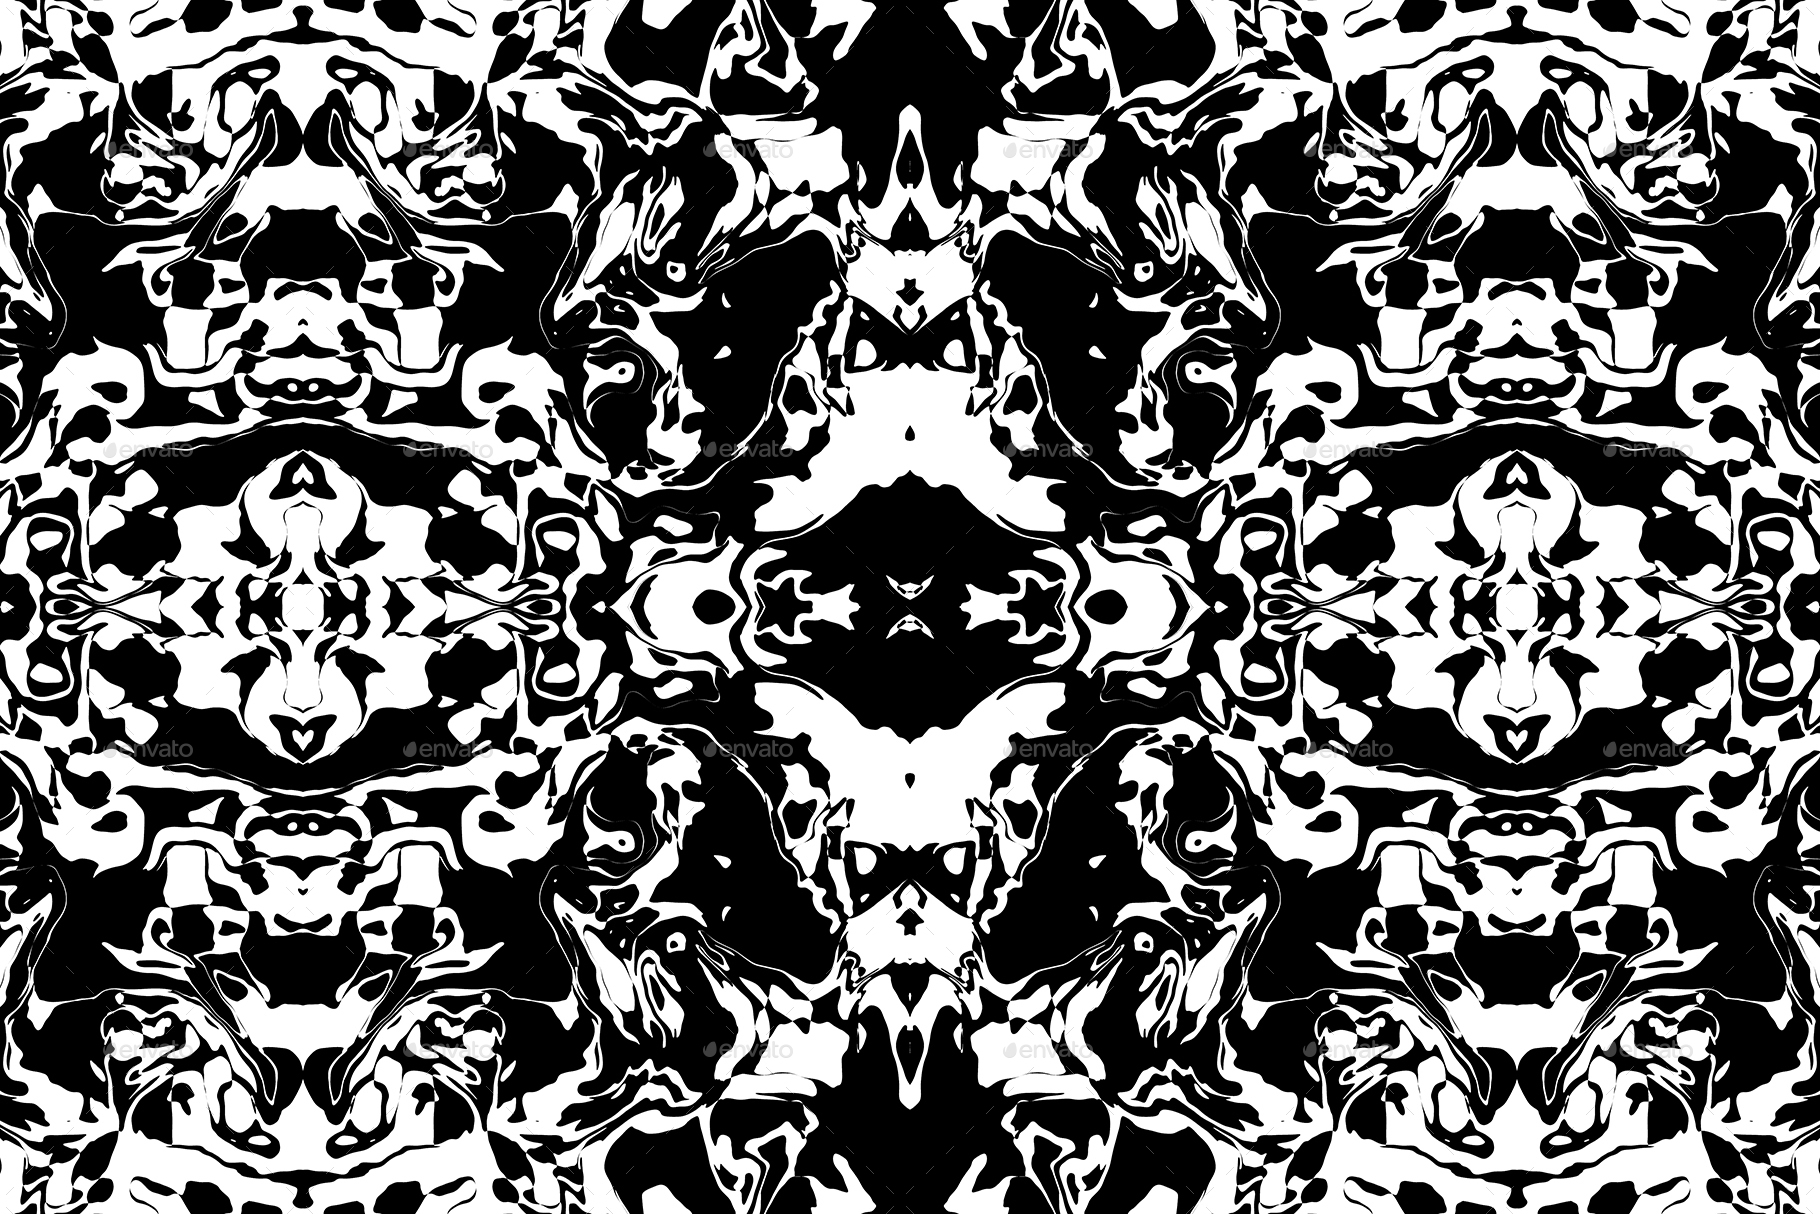 20 Rorschach Test Background Textures by TexturesStore | 3DOcean